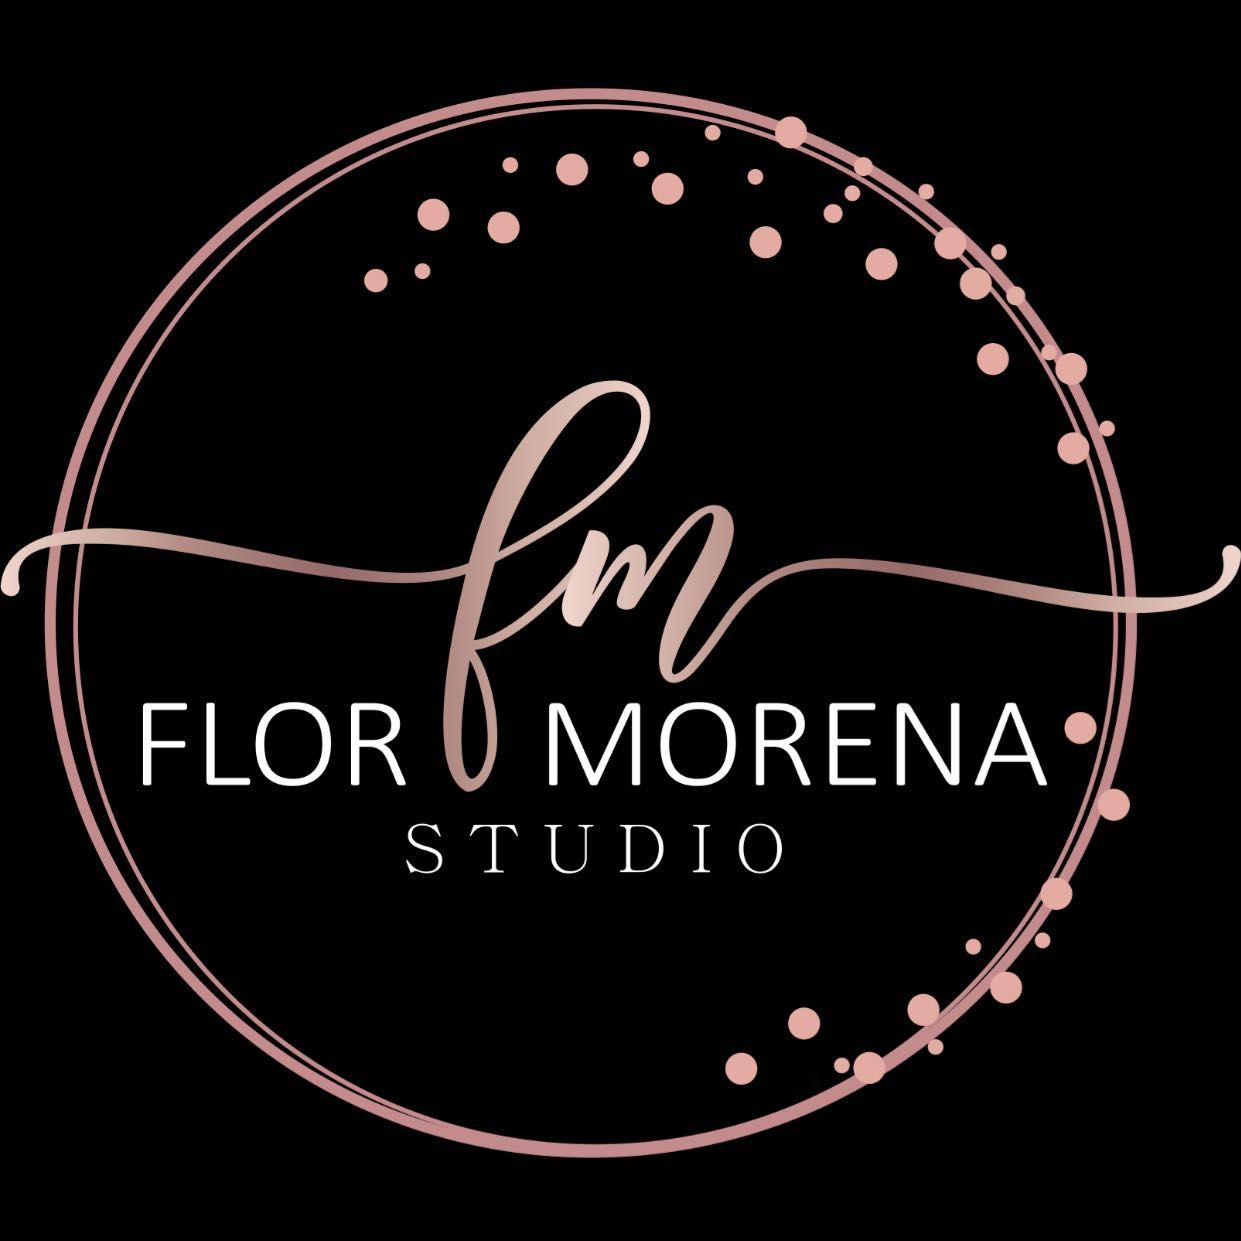 Studio flor morena, Estrada do Alvarenga, 1965, 04467-000, São Paulo